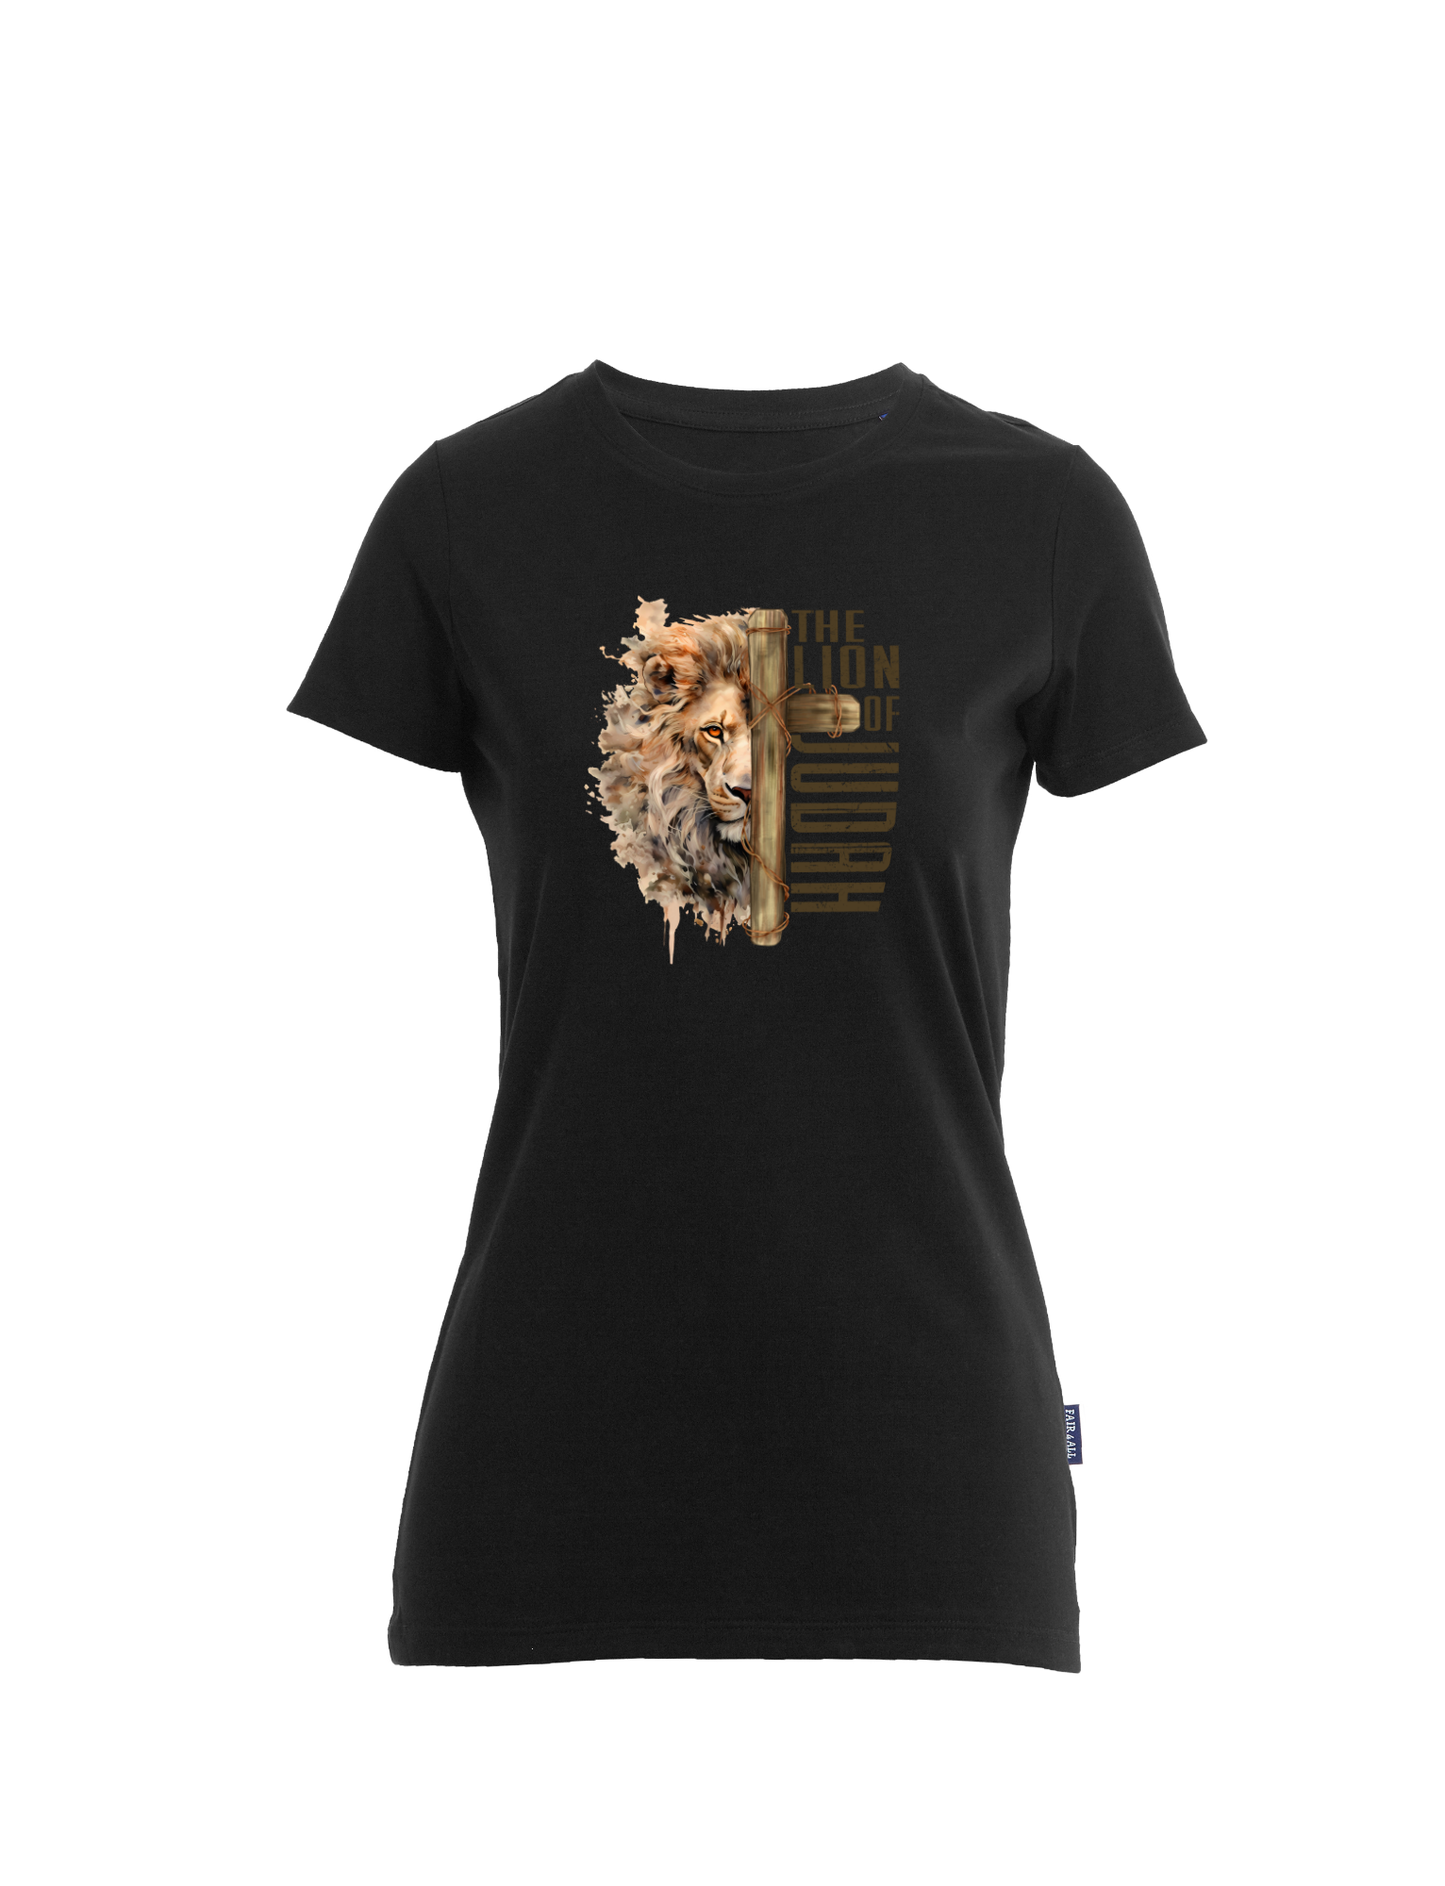 The Lion of Judah - T-Shirt Damen - großer Aufdruck